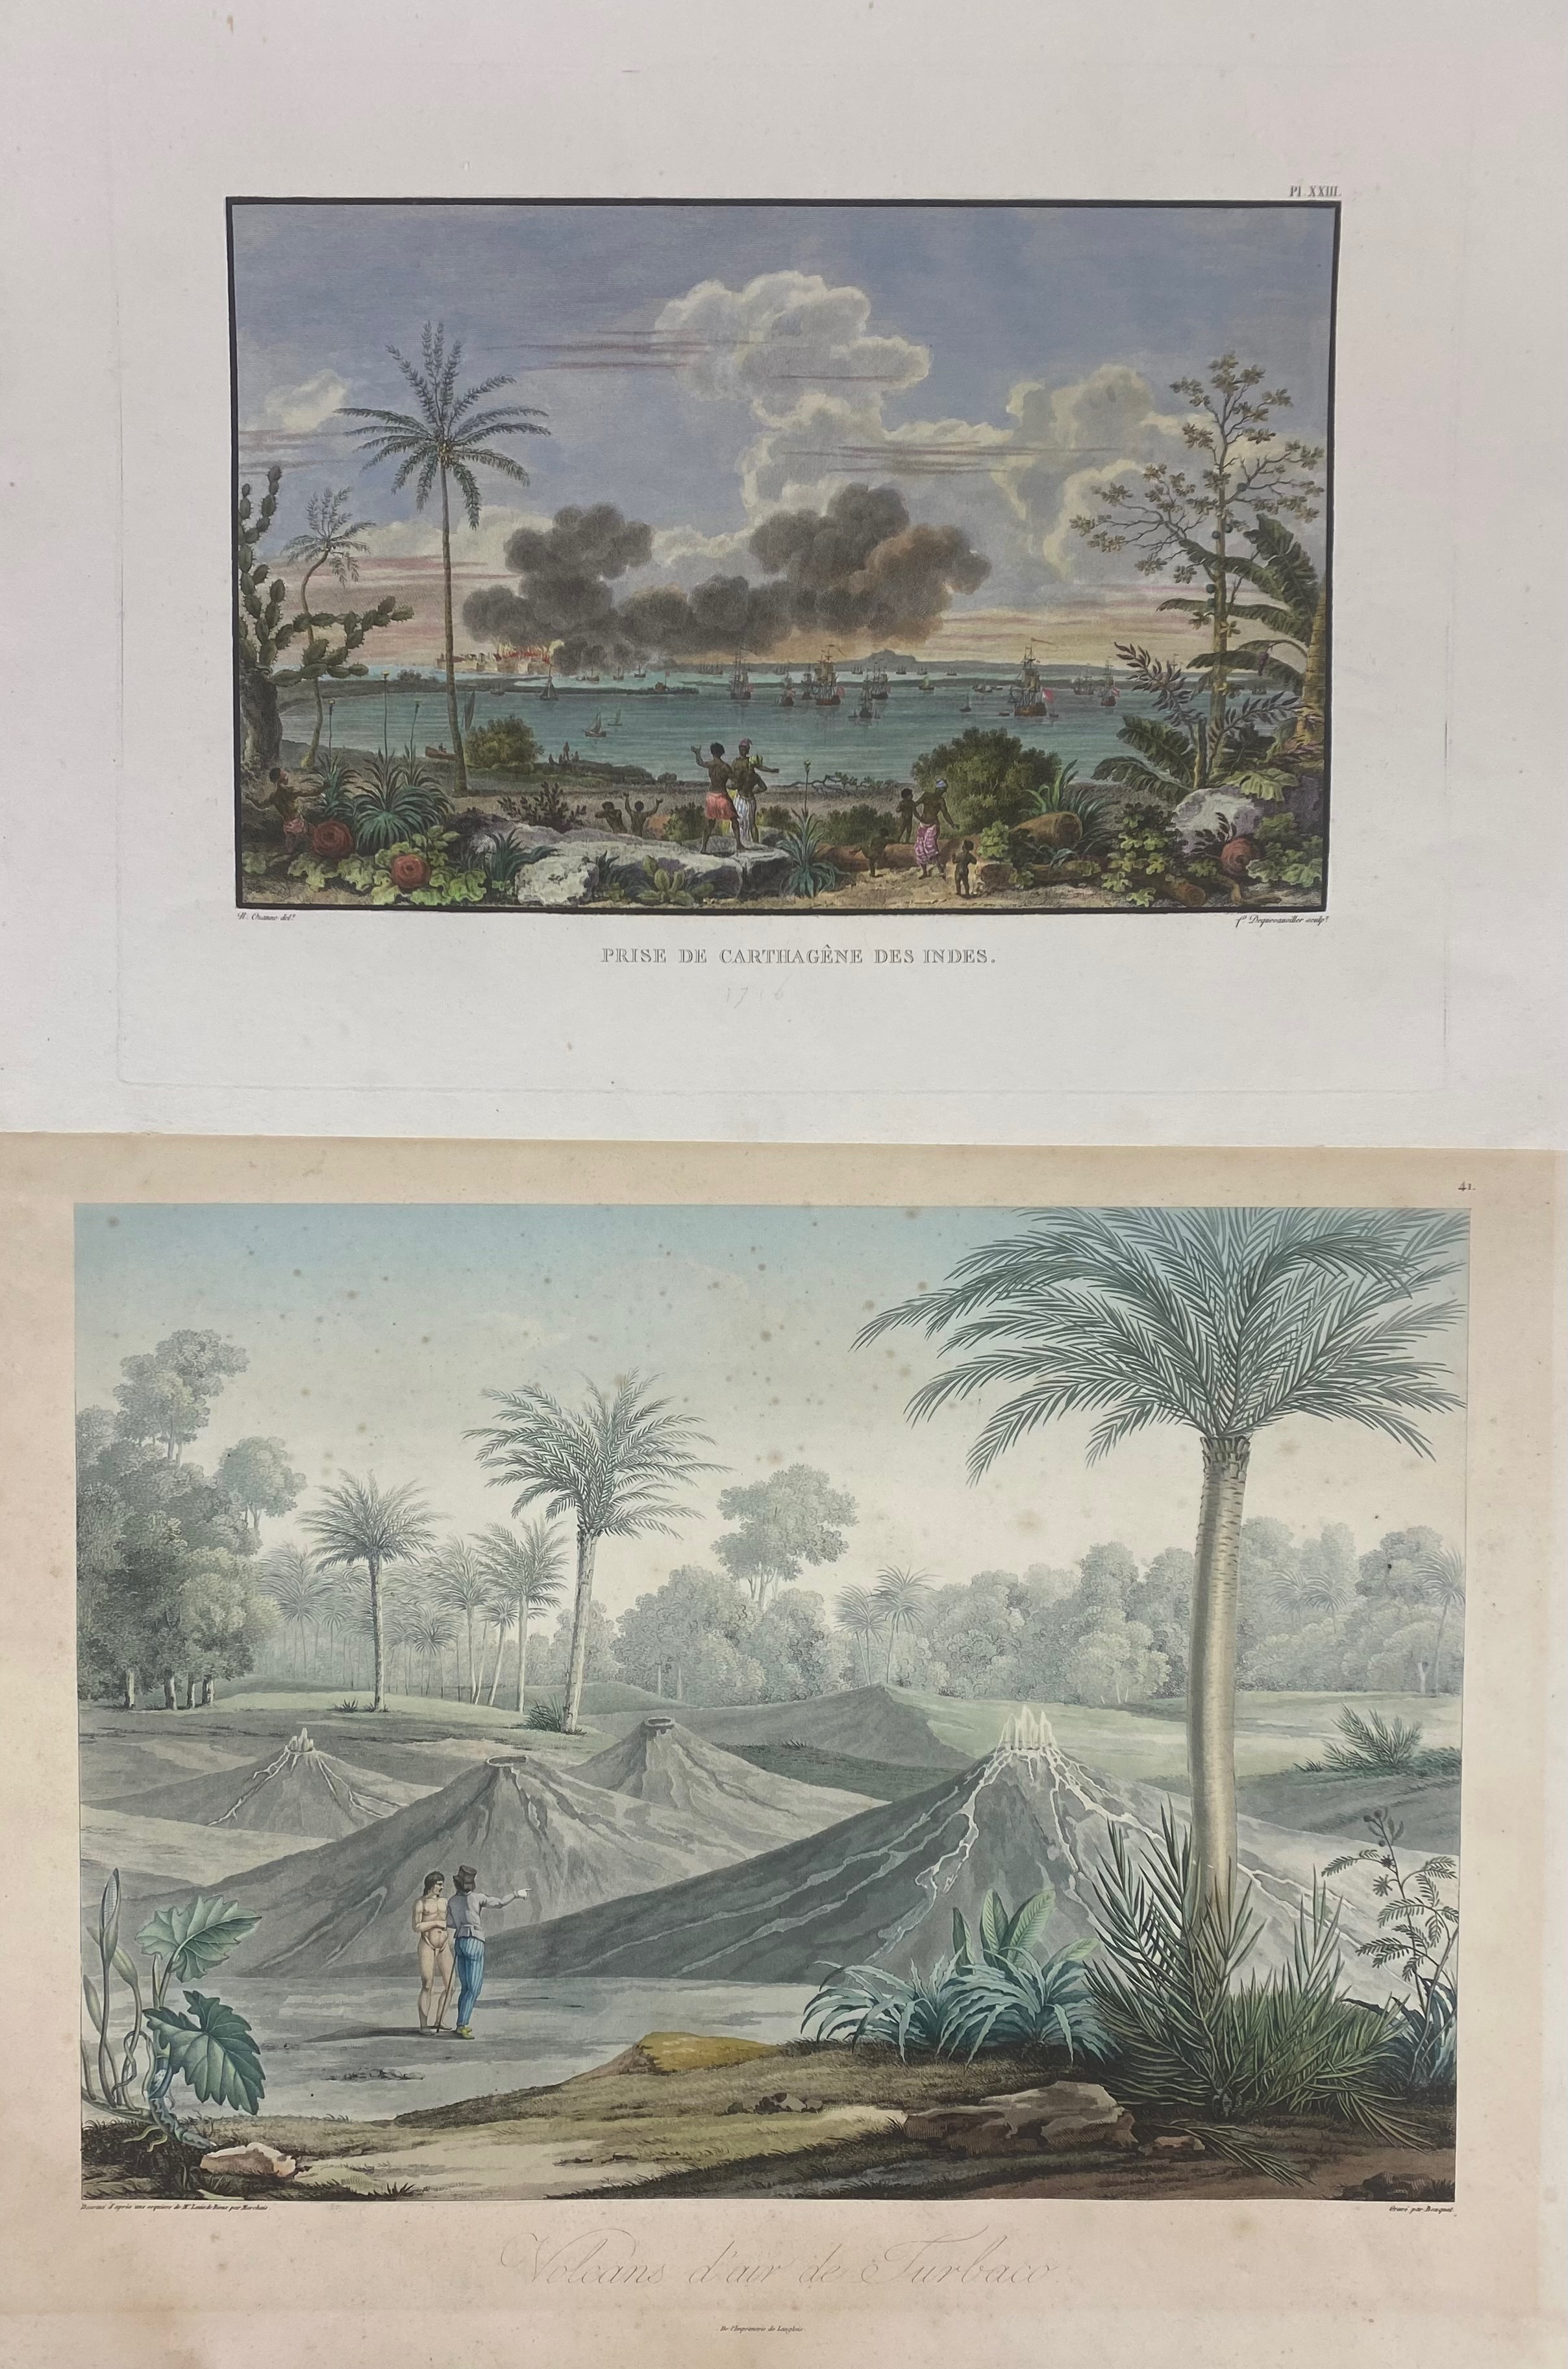 AMERICA -- COLOMBIA/CARTAGENA -- "VOLCANS d'air de Turbaco". (Par., 1810). Handcold. engr. by